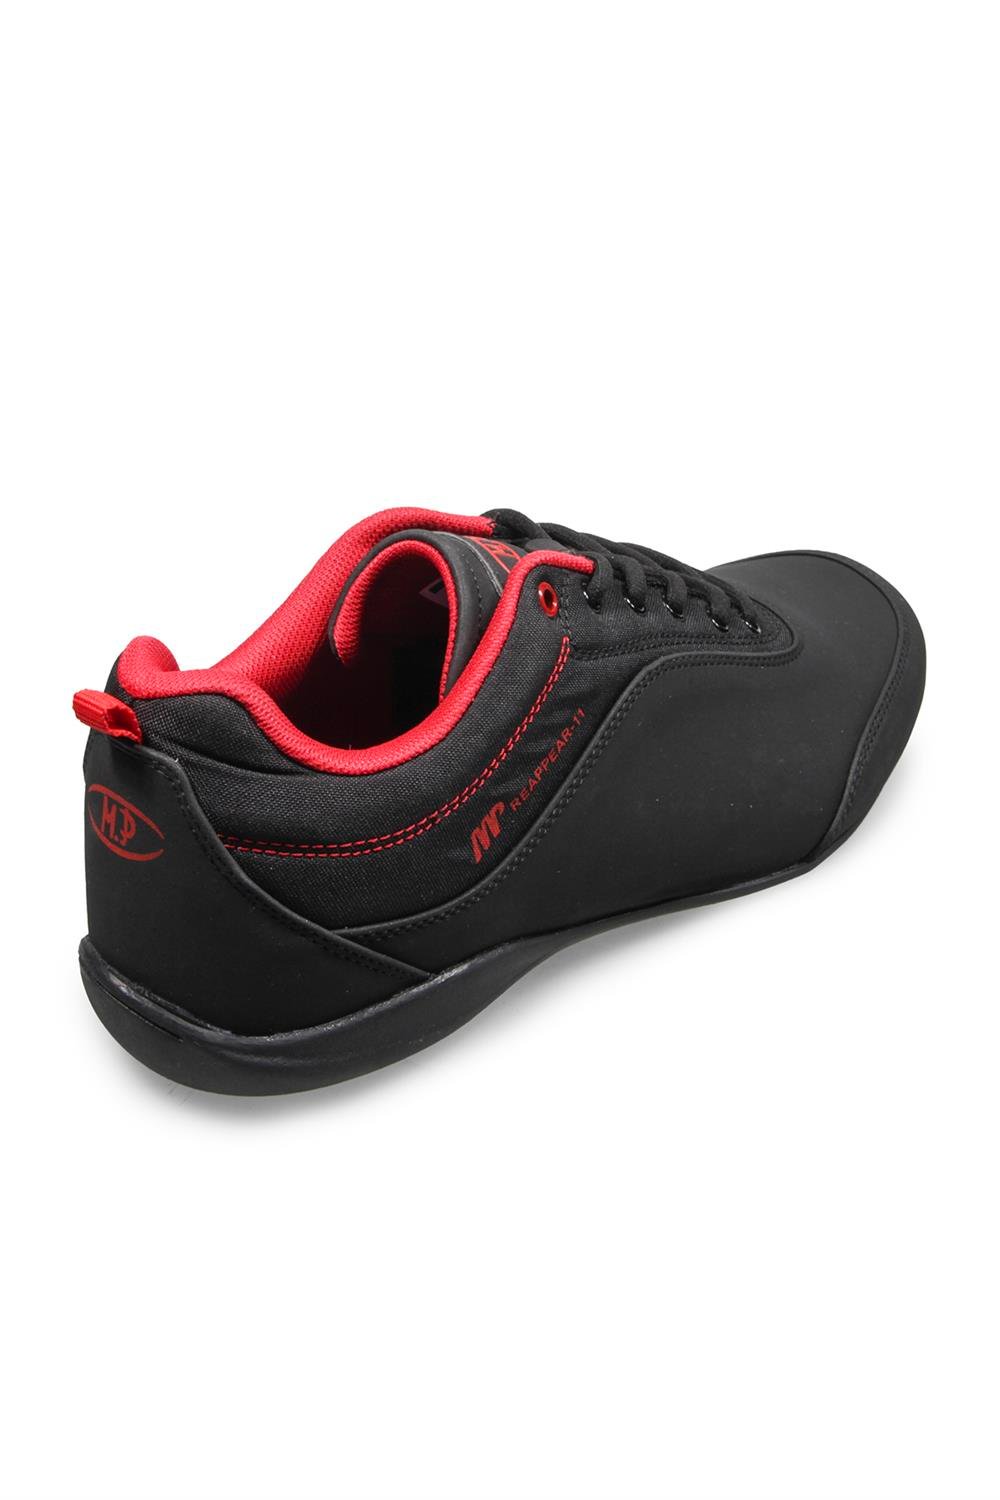 Erkek Siyah-kirmizi Spor Ayakkabı Modelleri ve Fiyatları